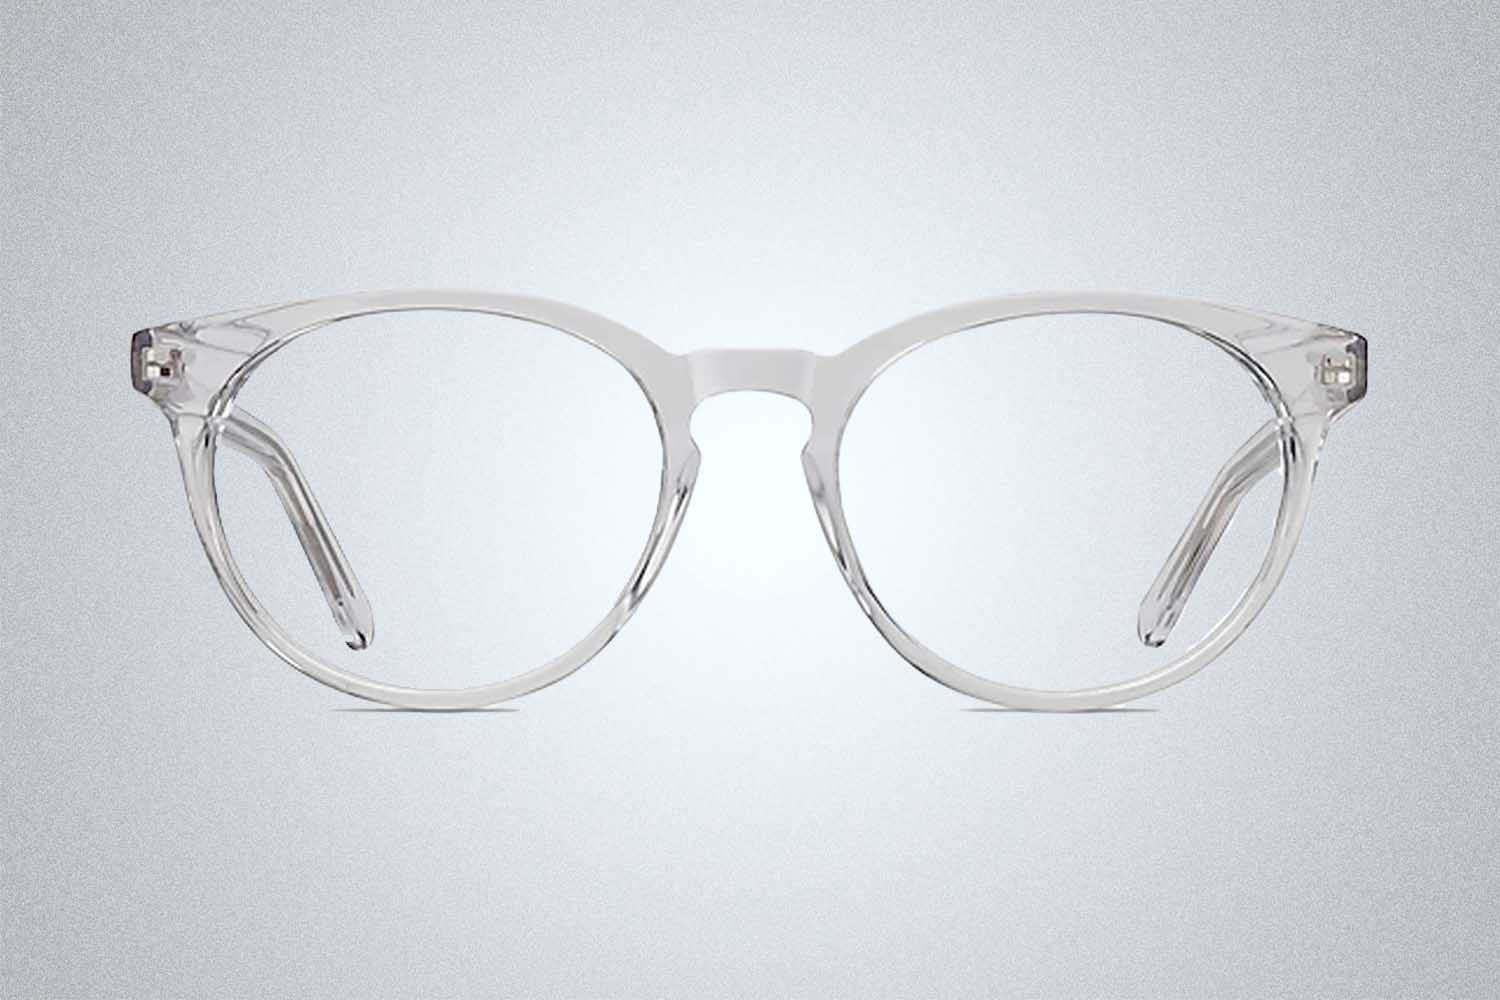 EyeBuyDirect Morning Glasses